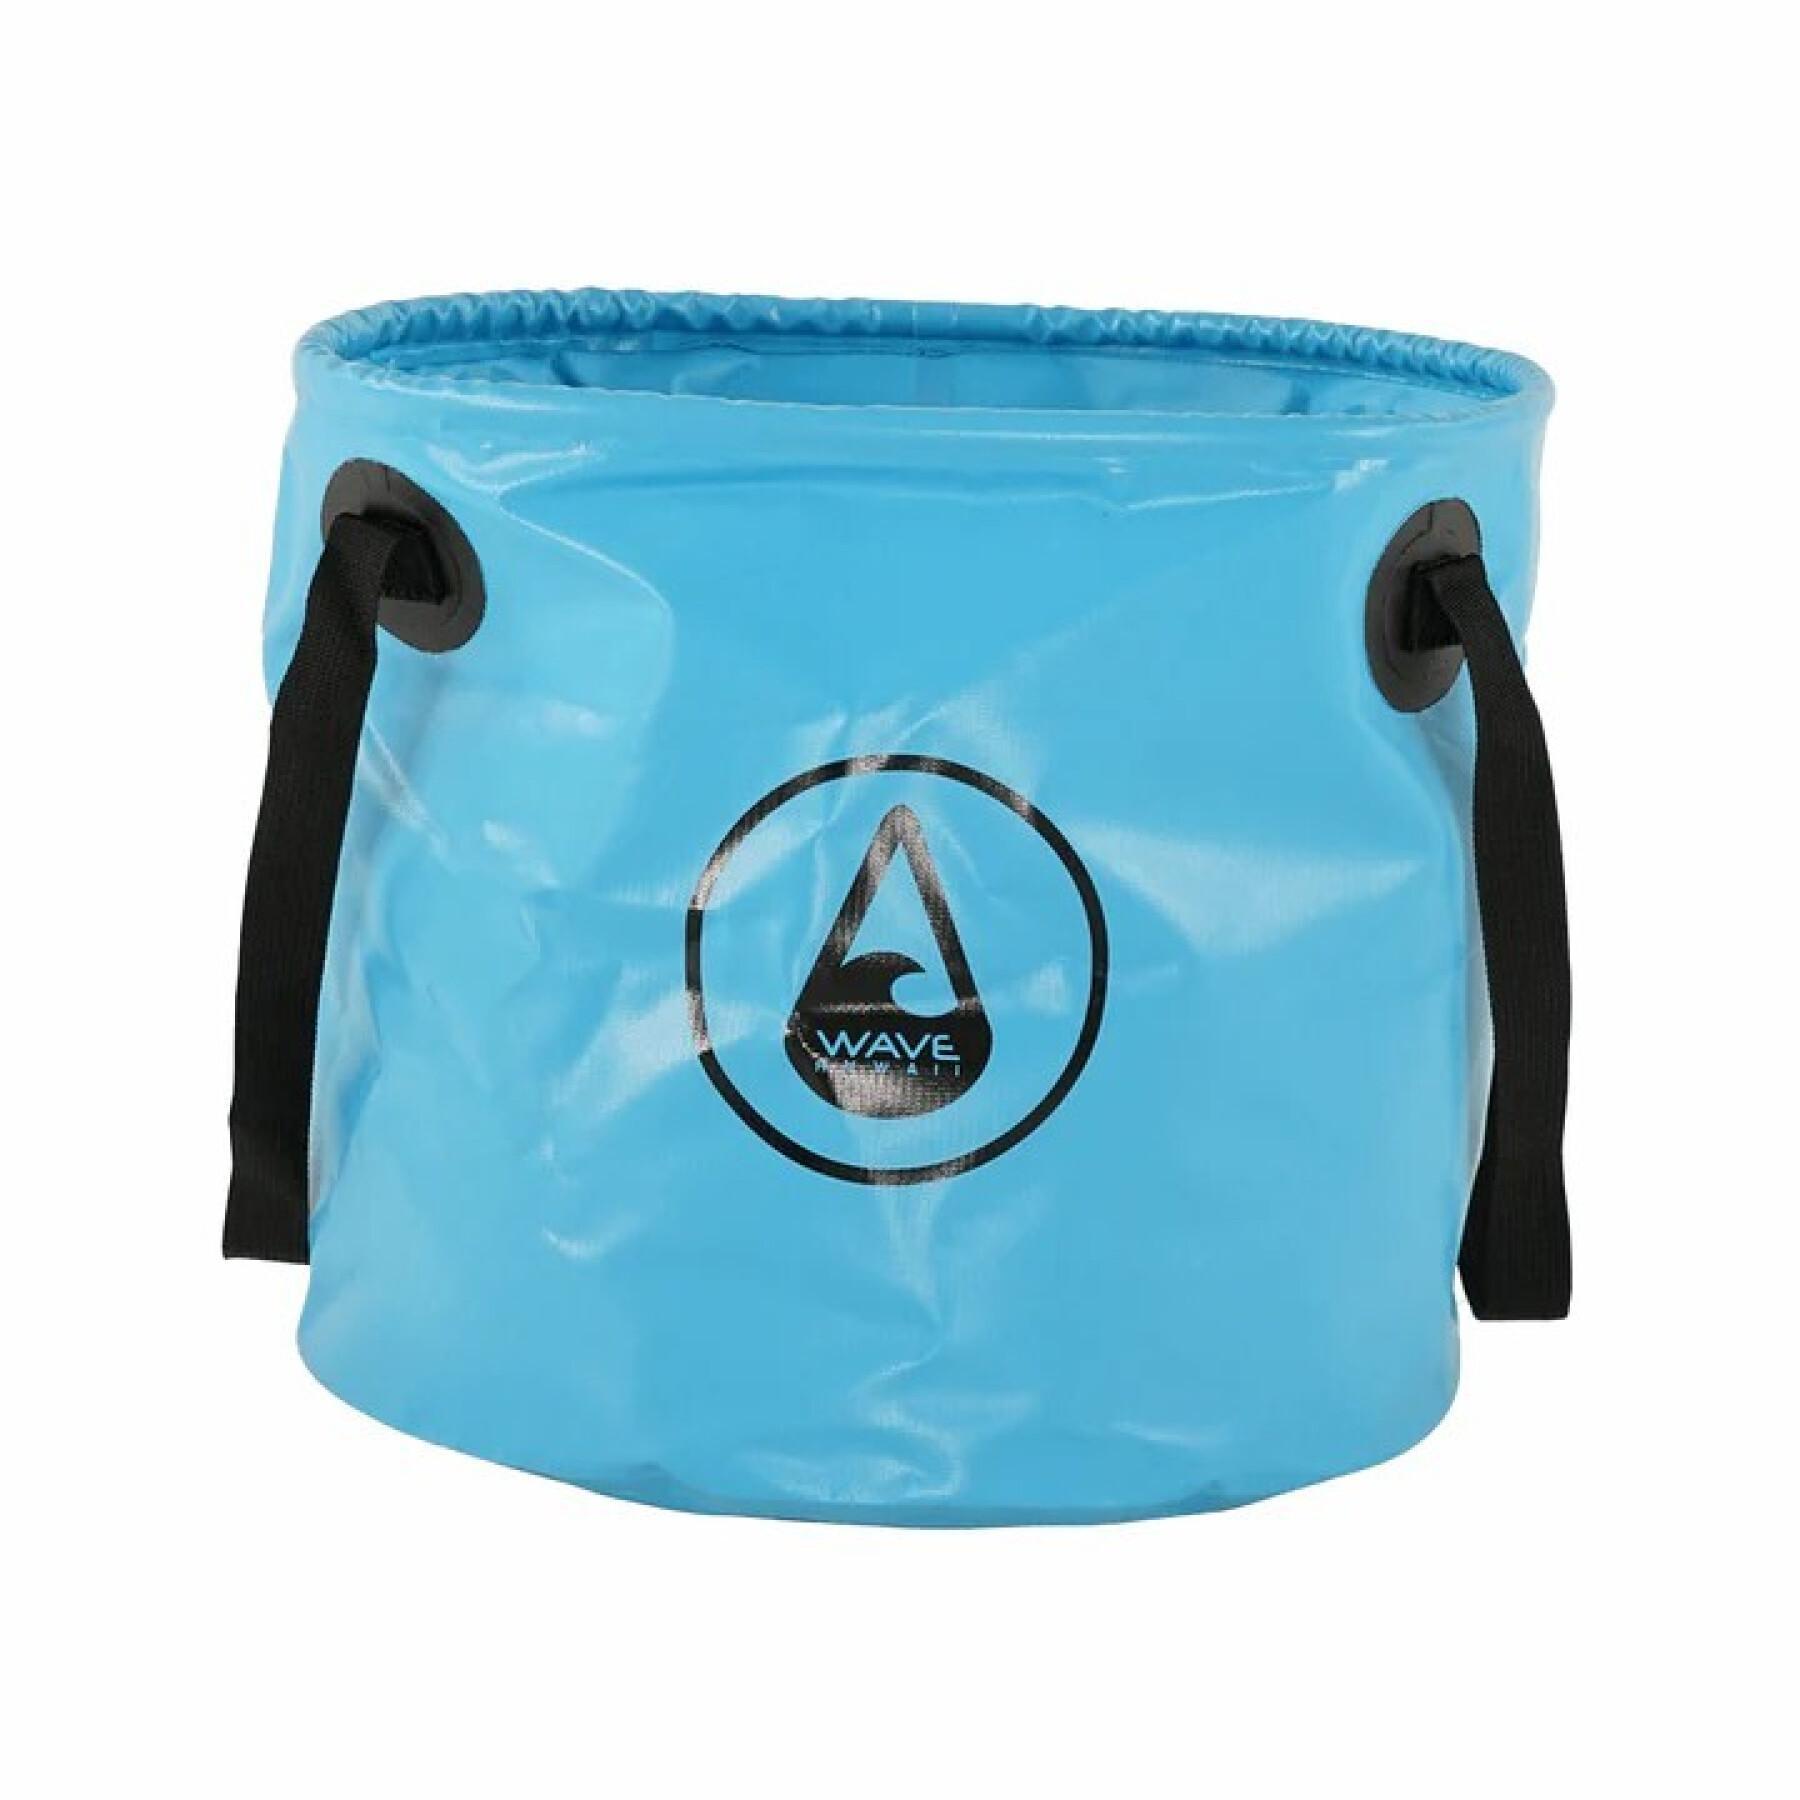 Foldable waterproof bucket Wave Hawaii